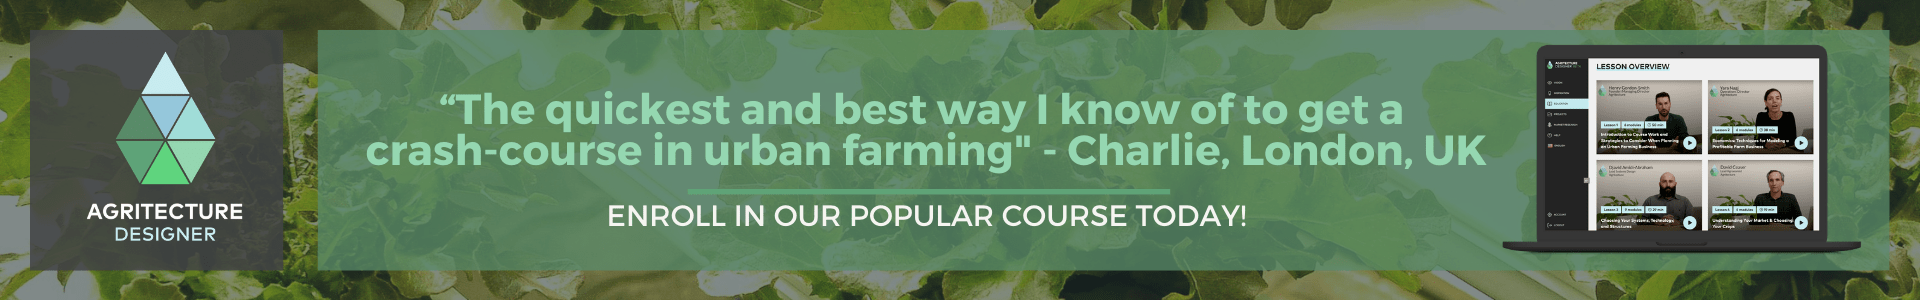 Commercial Urban Farming Course testimonial